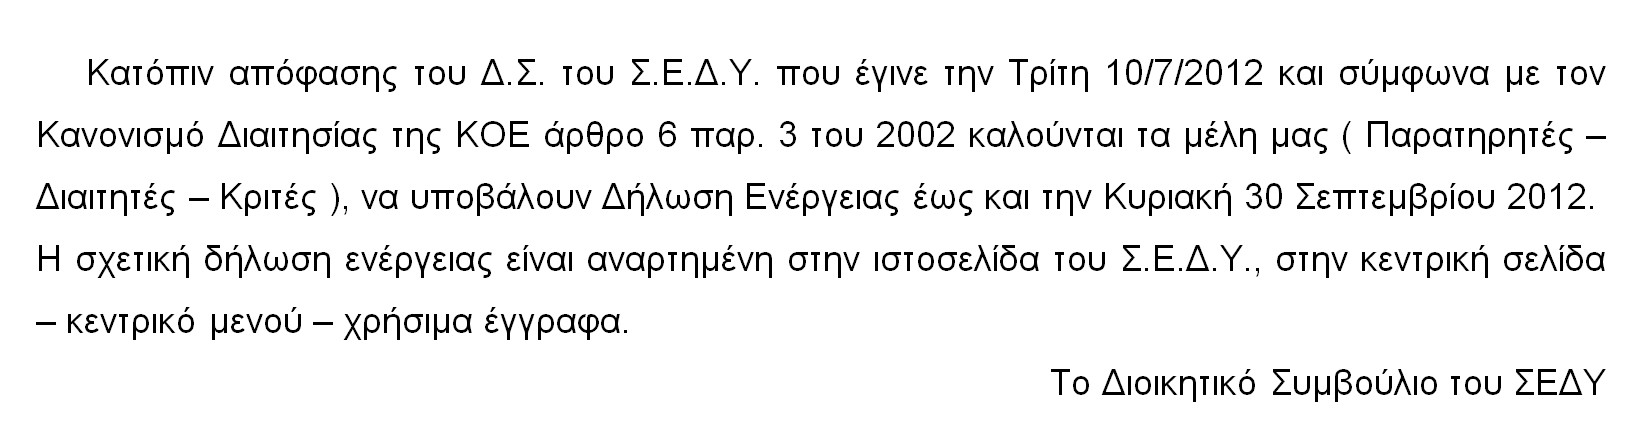 ENHMEROTIKO_12.7.2012_2